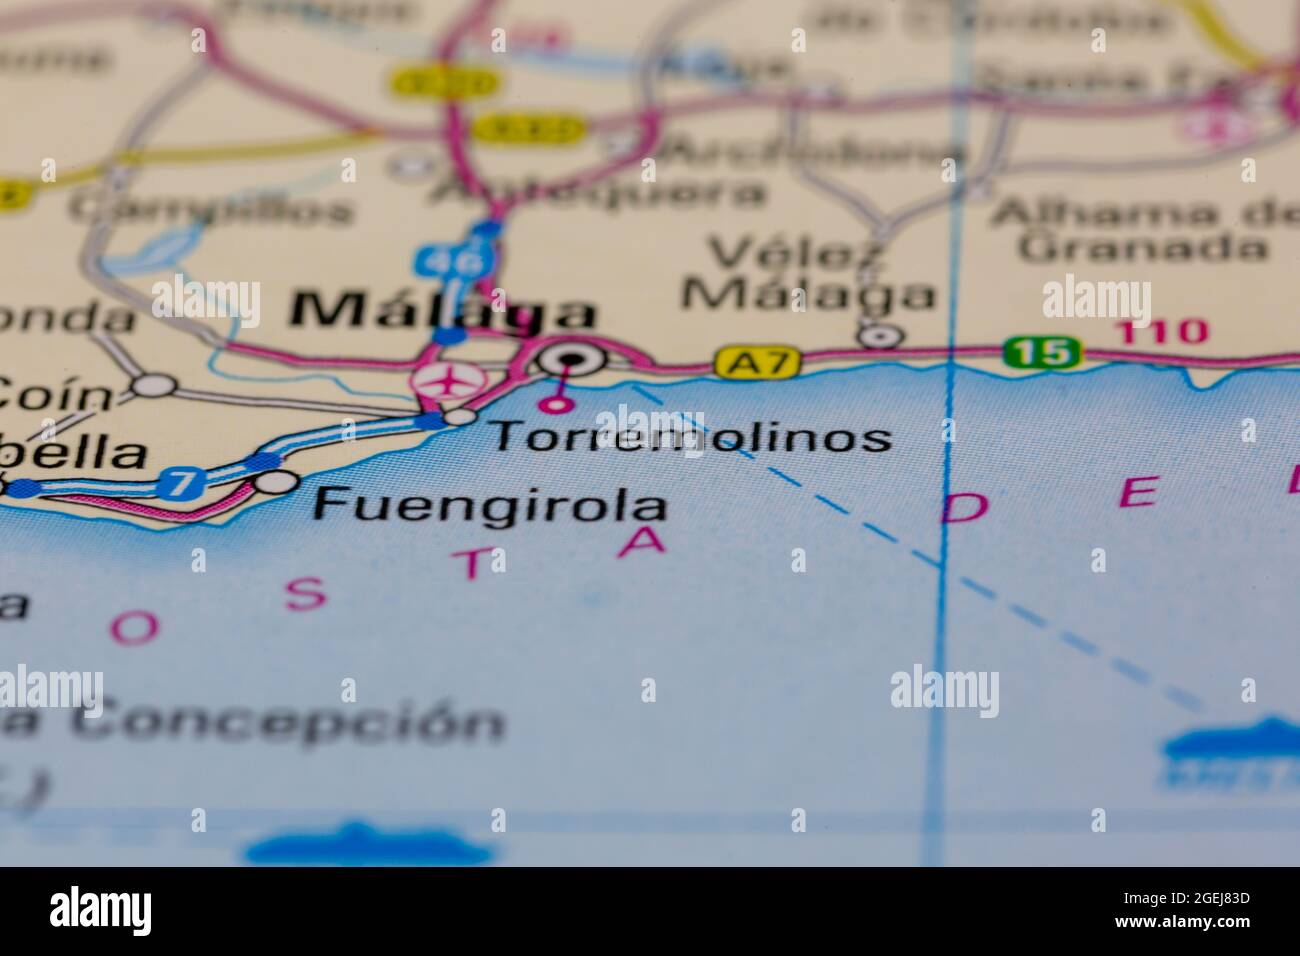 Torremolinos España aparece en un mapa de carreteras o en un mapa geográfico Foto de stock